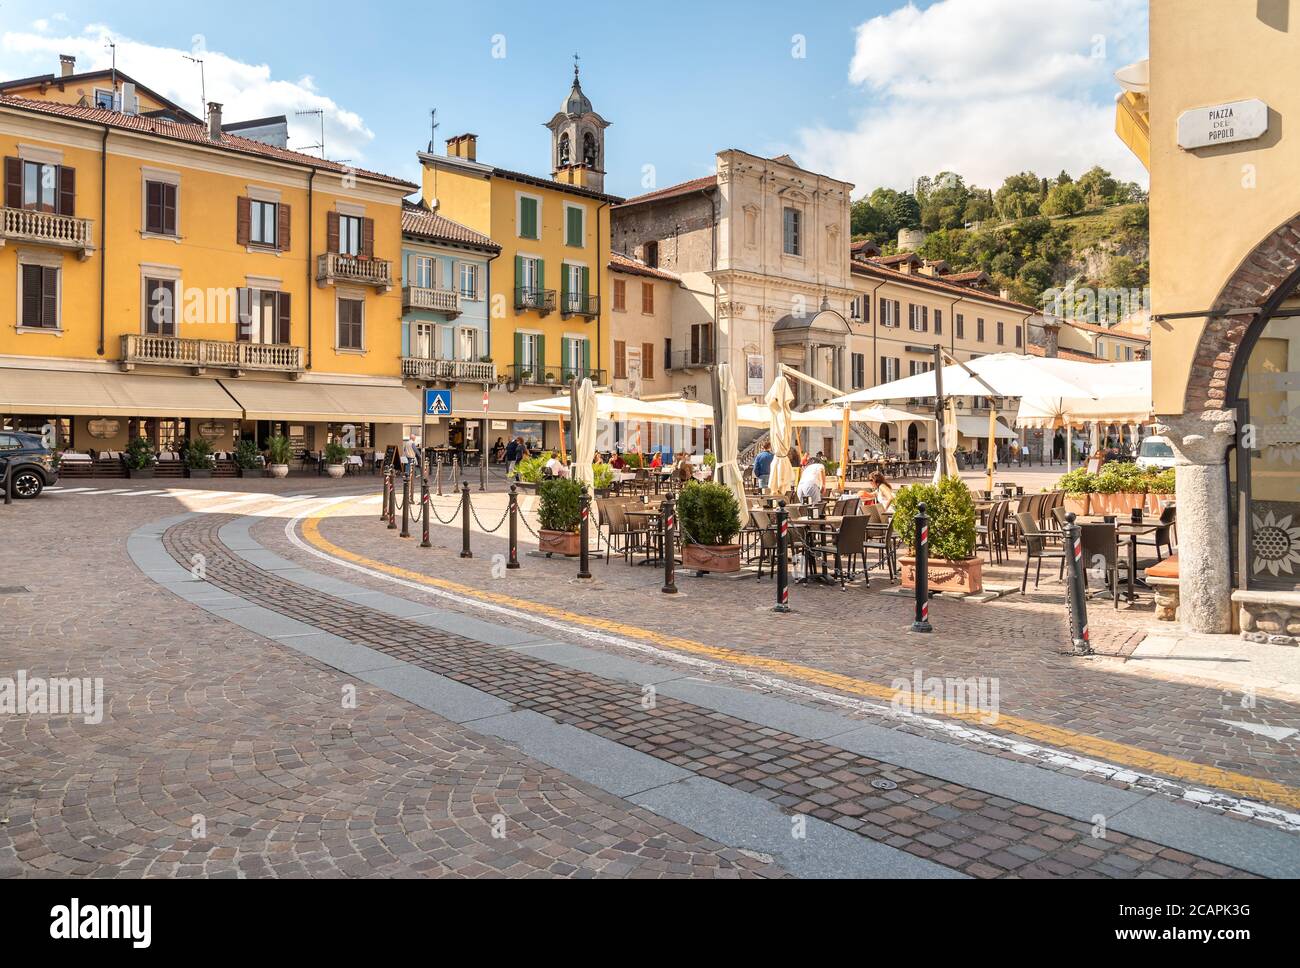 Arona, Piémont, Italie - 25 septembre 2019: Vue sur la place centrale - Piazza Del Popolo avec des bars traditionnels, des restaurants et des boutiques dans le centre d'Aron Banque D'Images